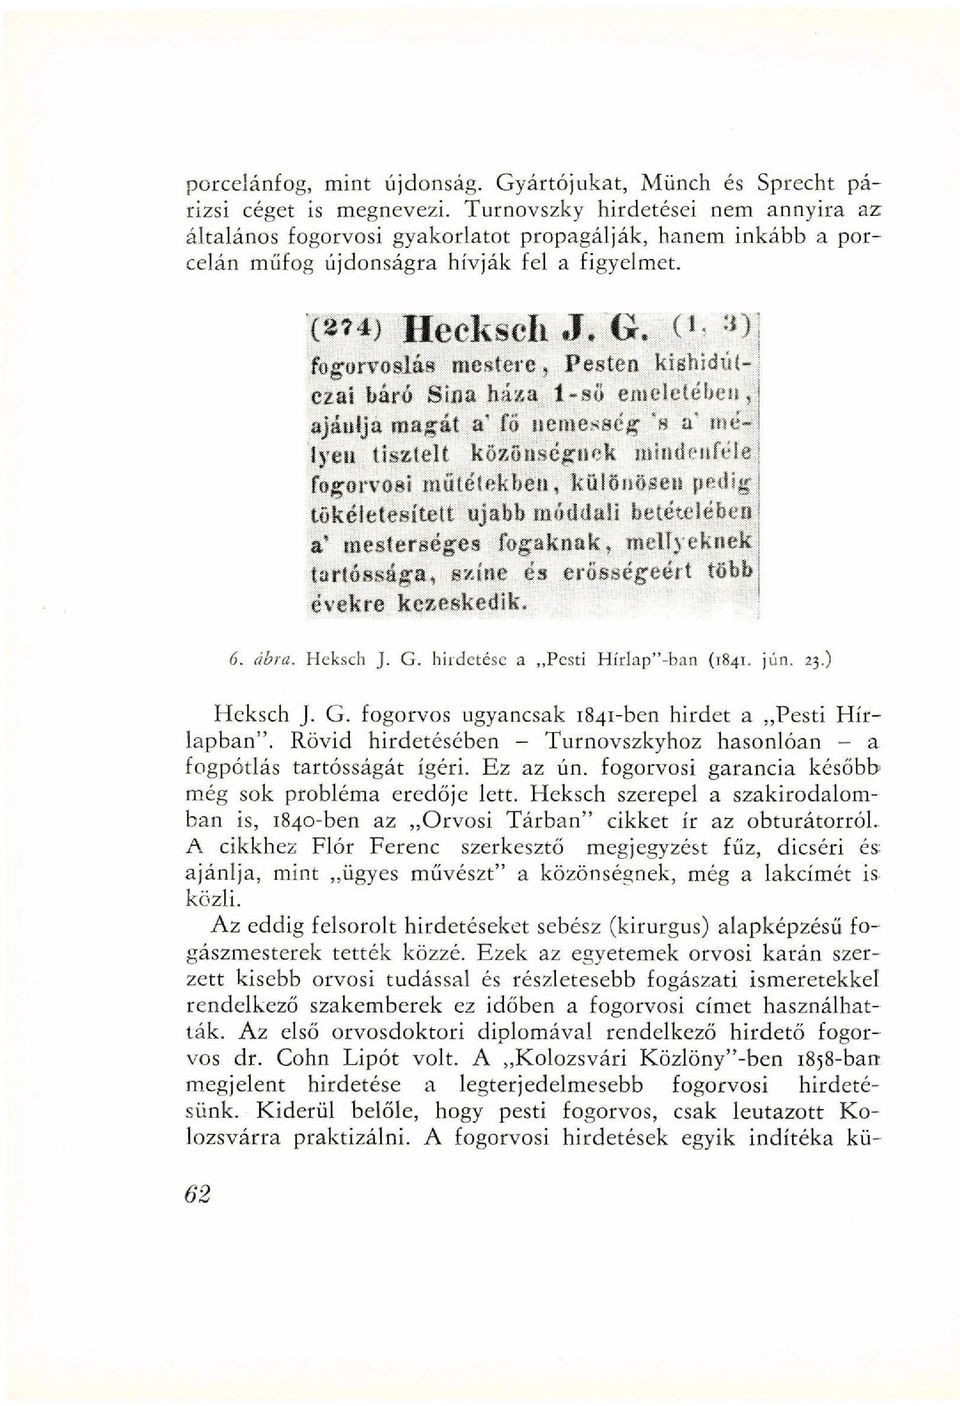 hirdetése a Pesti Hírlap"-ban (1841. jún. 23,) Heksch J. G. fogorvos ugyancsak 1841-ben hirdet a Pesti Hírlapban". Rövid hirdetésében - Turnovszkyhoz hasonlóan - a fogpótlás tartósságát ígéri.